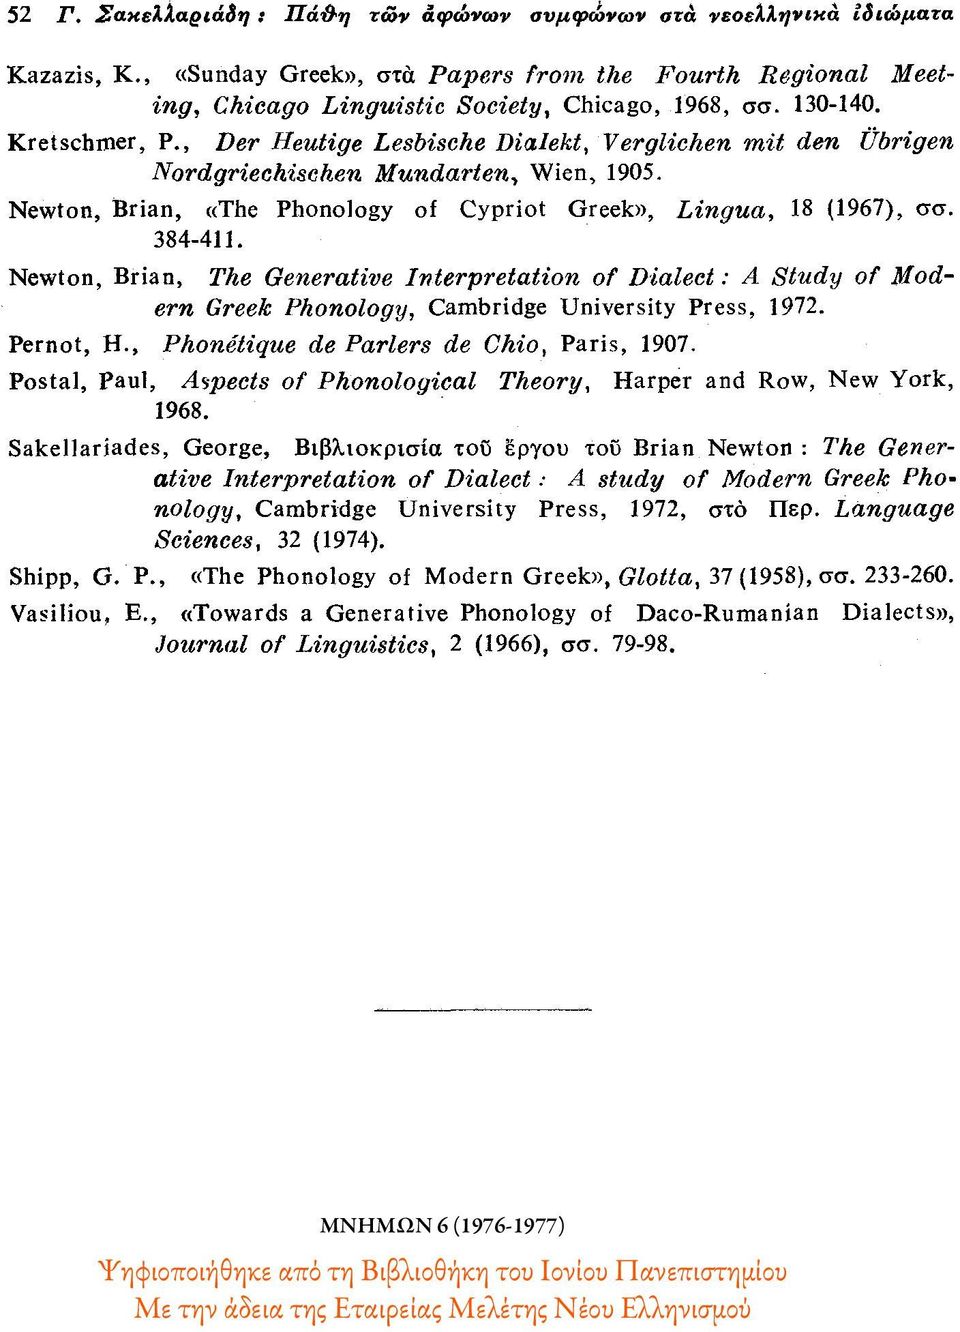 Newton, Brian, The Generative Interpretation of Dialect : A Study of Modern Greek Phonology, Cambridge University Press, 1972. Pernot, H., Phonétique de Parlers de Chio, Paris, 1907.